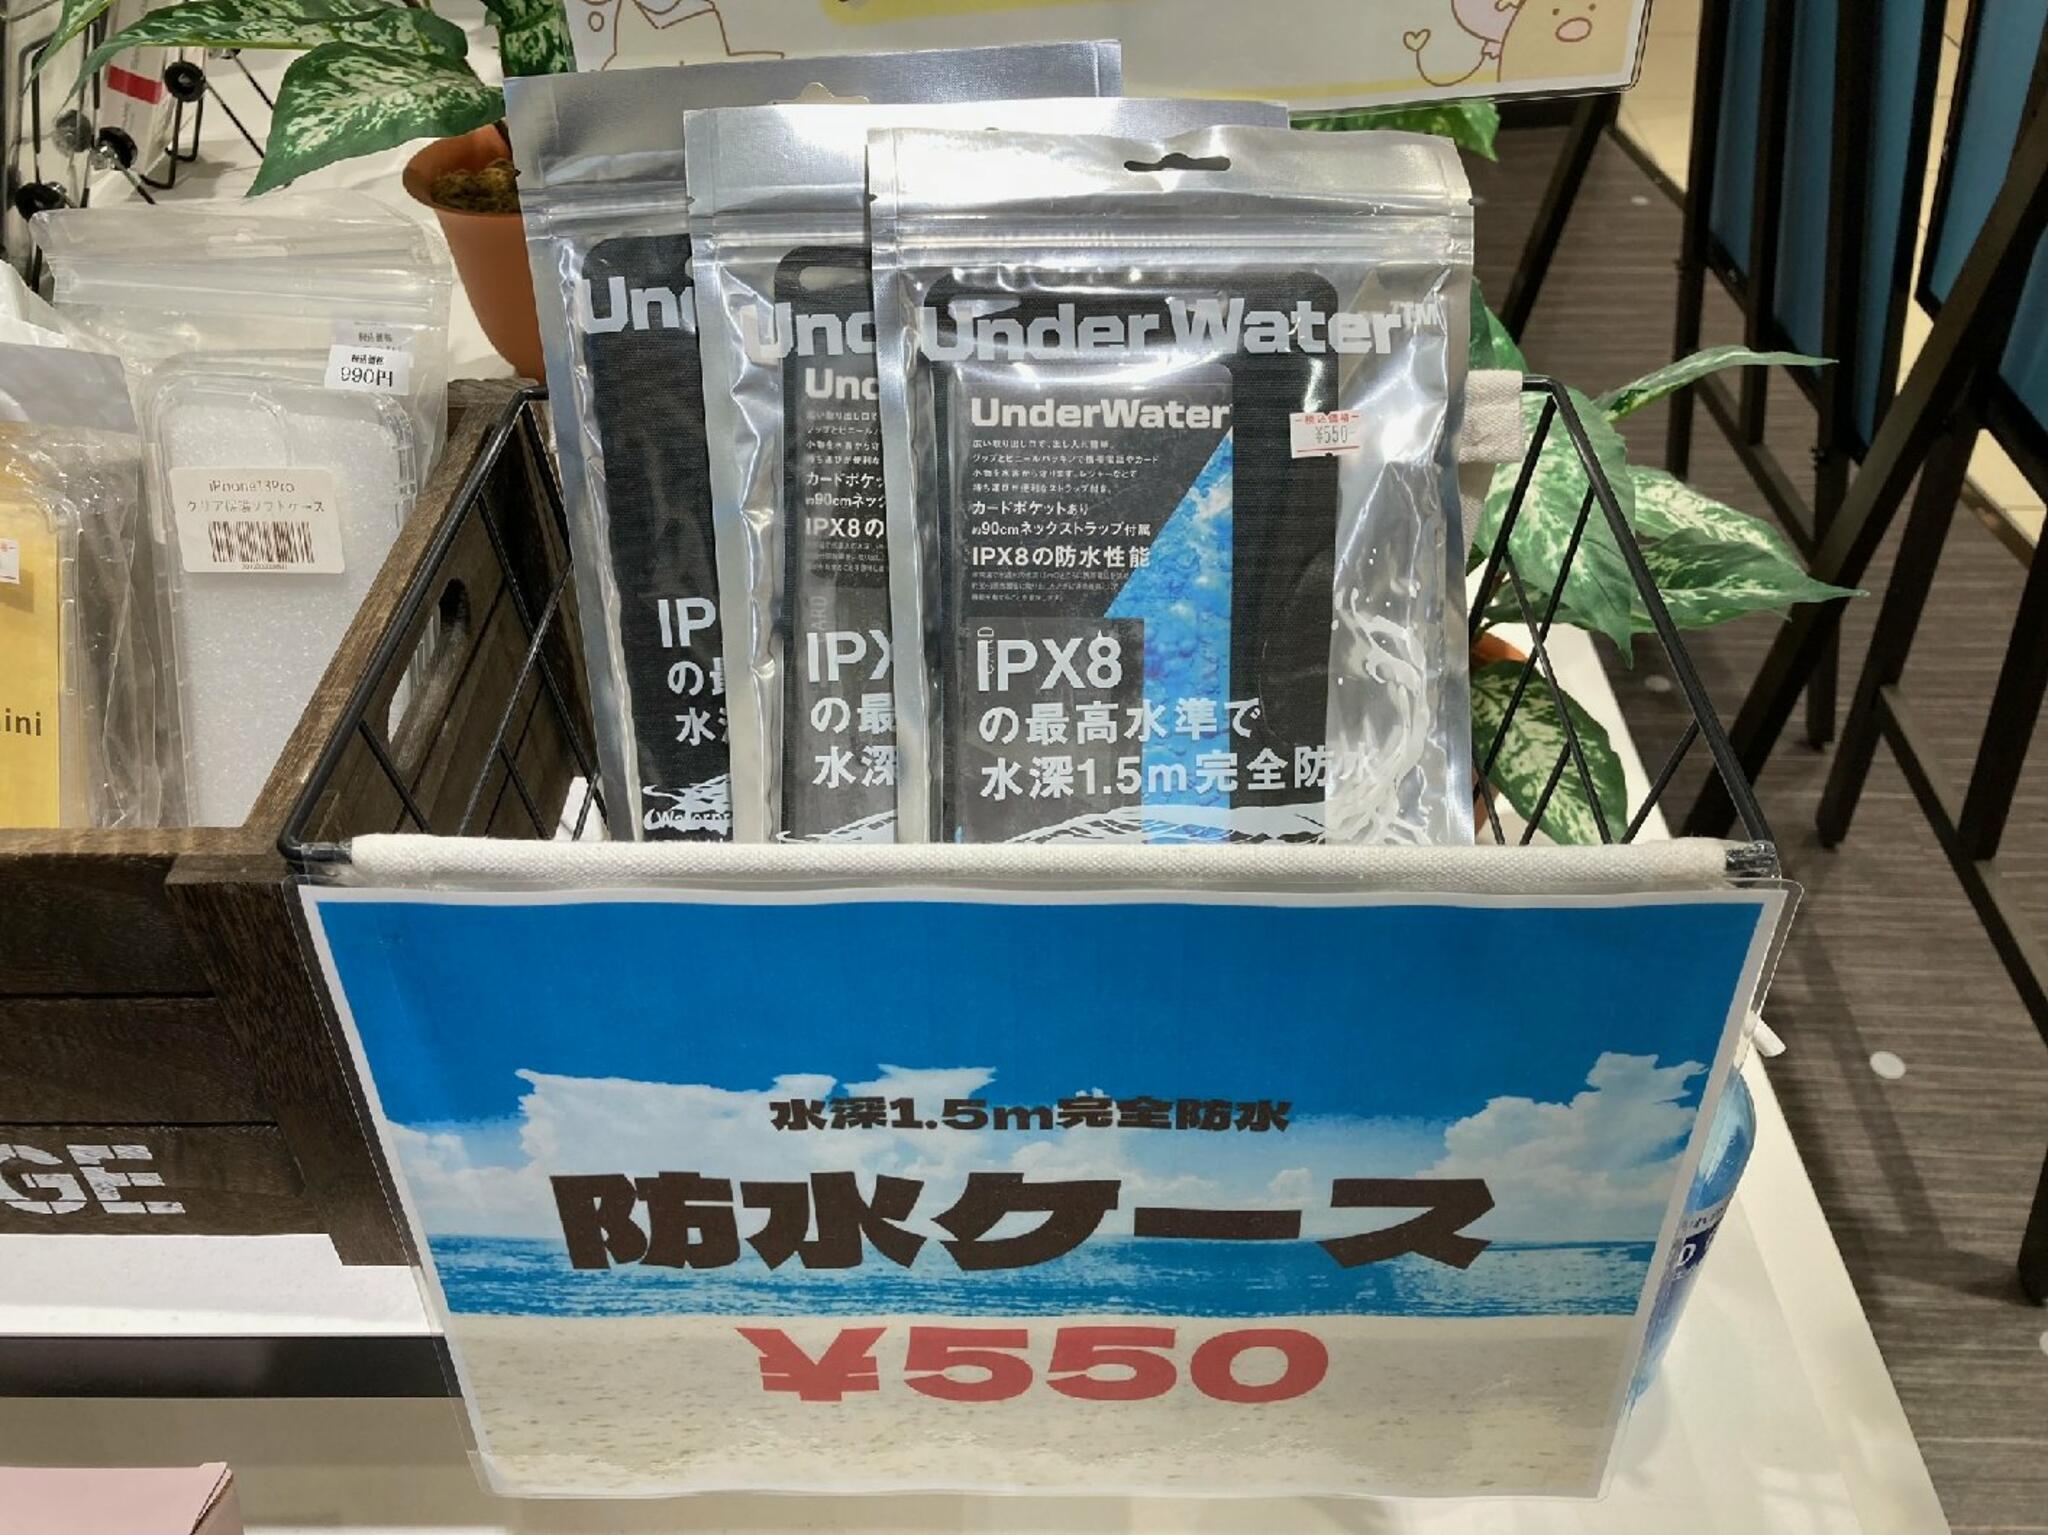 iPhone・iPad・Switch修理店 スマートクール イオンモール広島祇園店からのお知らせ( 水辺 でのスマホの使用は十分注意してください！！ )に関する写真